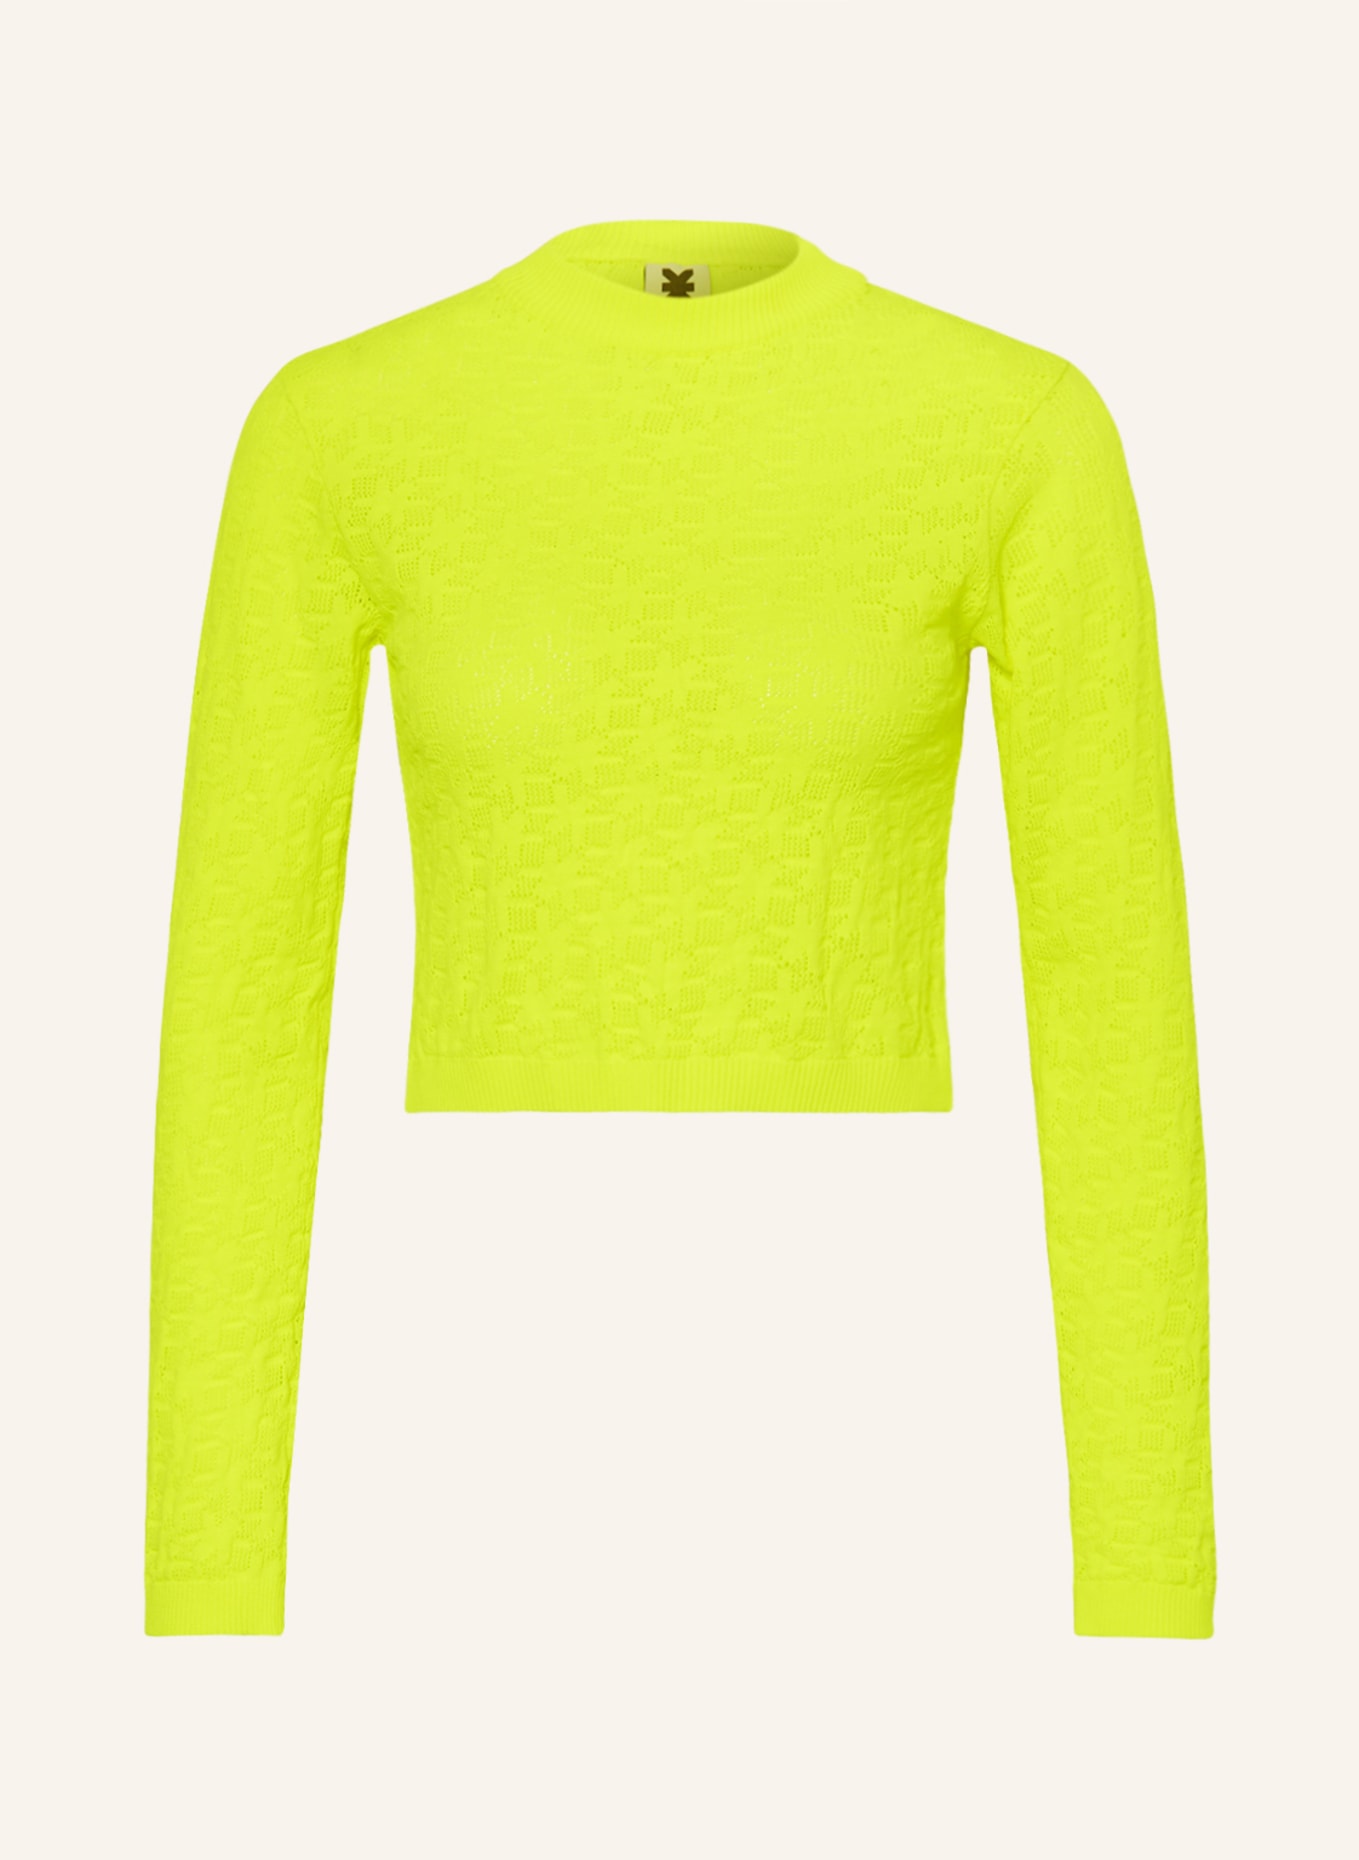 KARO KAUER Cropped-Pullover, Farbe: NEONGELB (Bild 1)